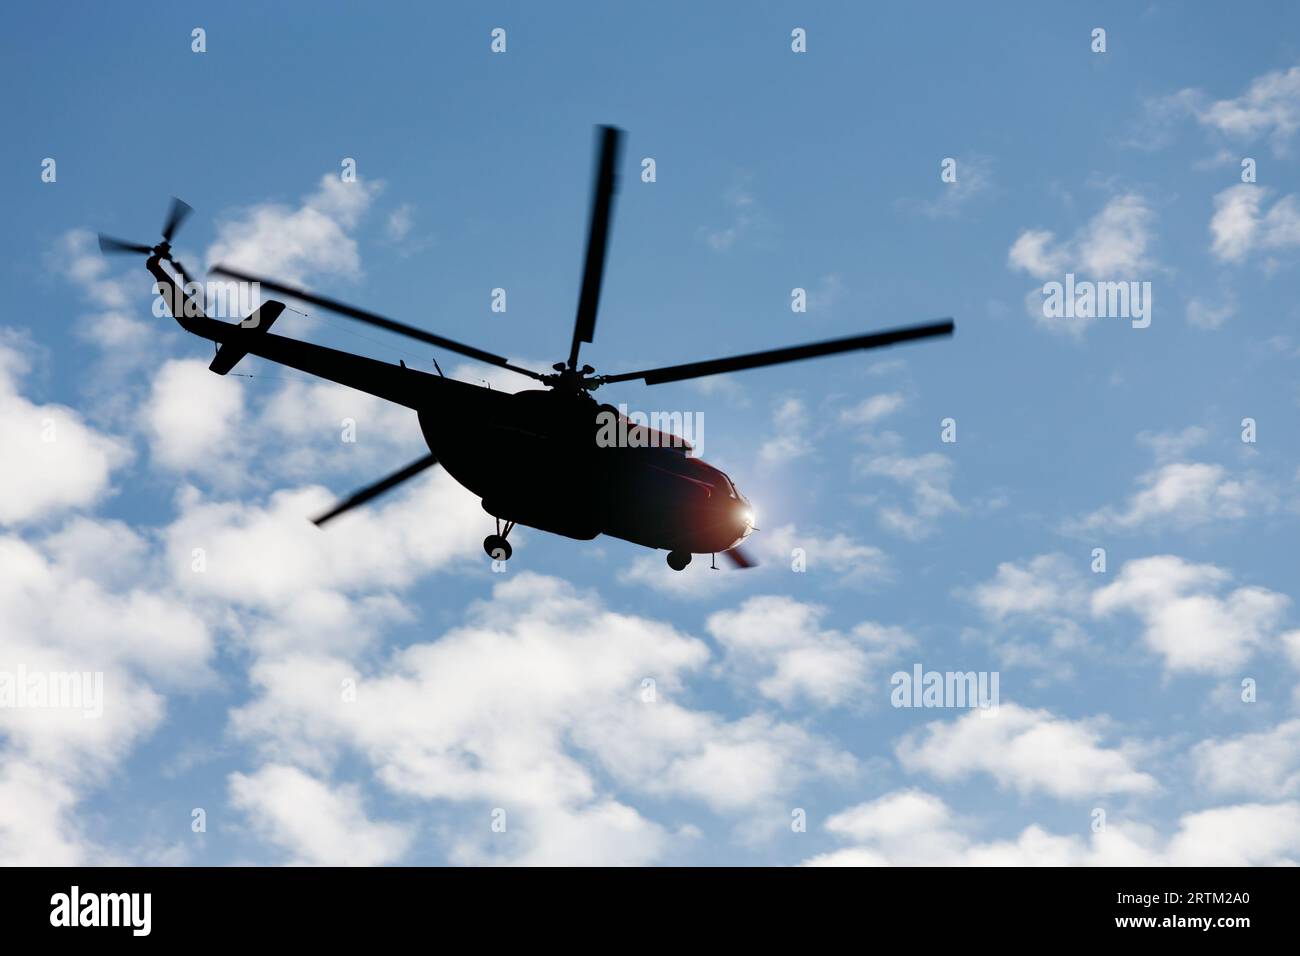 Die Silhouette des Mi-8-Hubschraubers vor dem blauen Himmel mit Wolken im Flug. Stockfoto